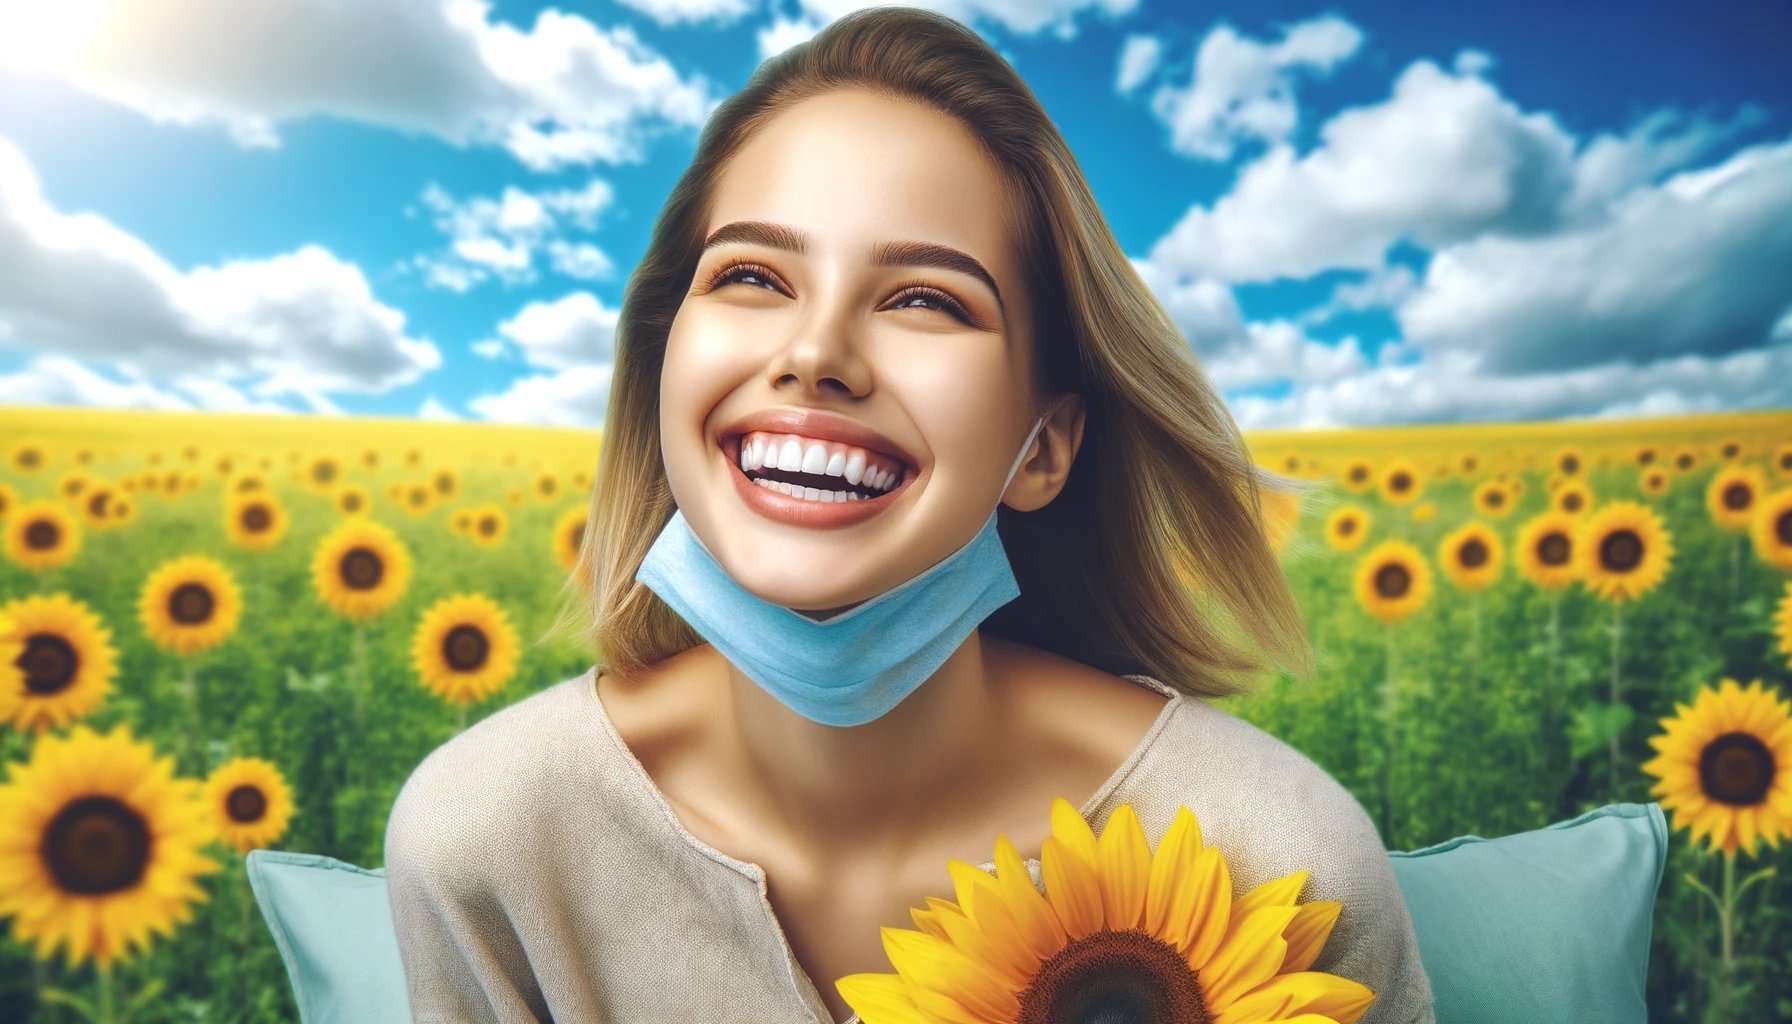 sonrisa radiante tras aliviar sensibilidad dental